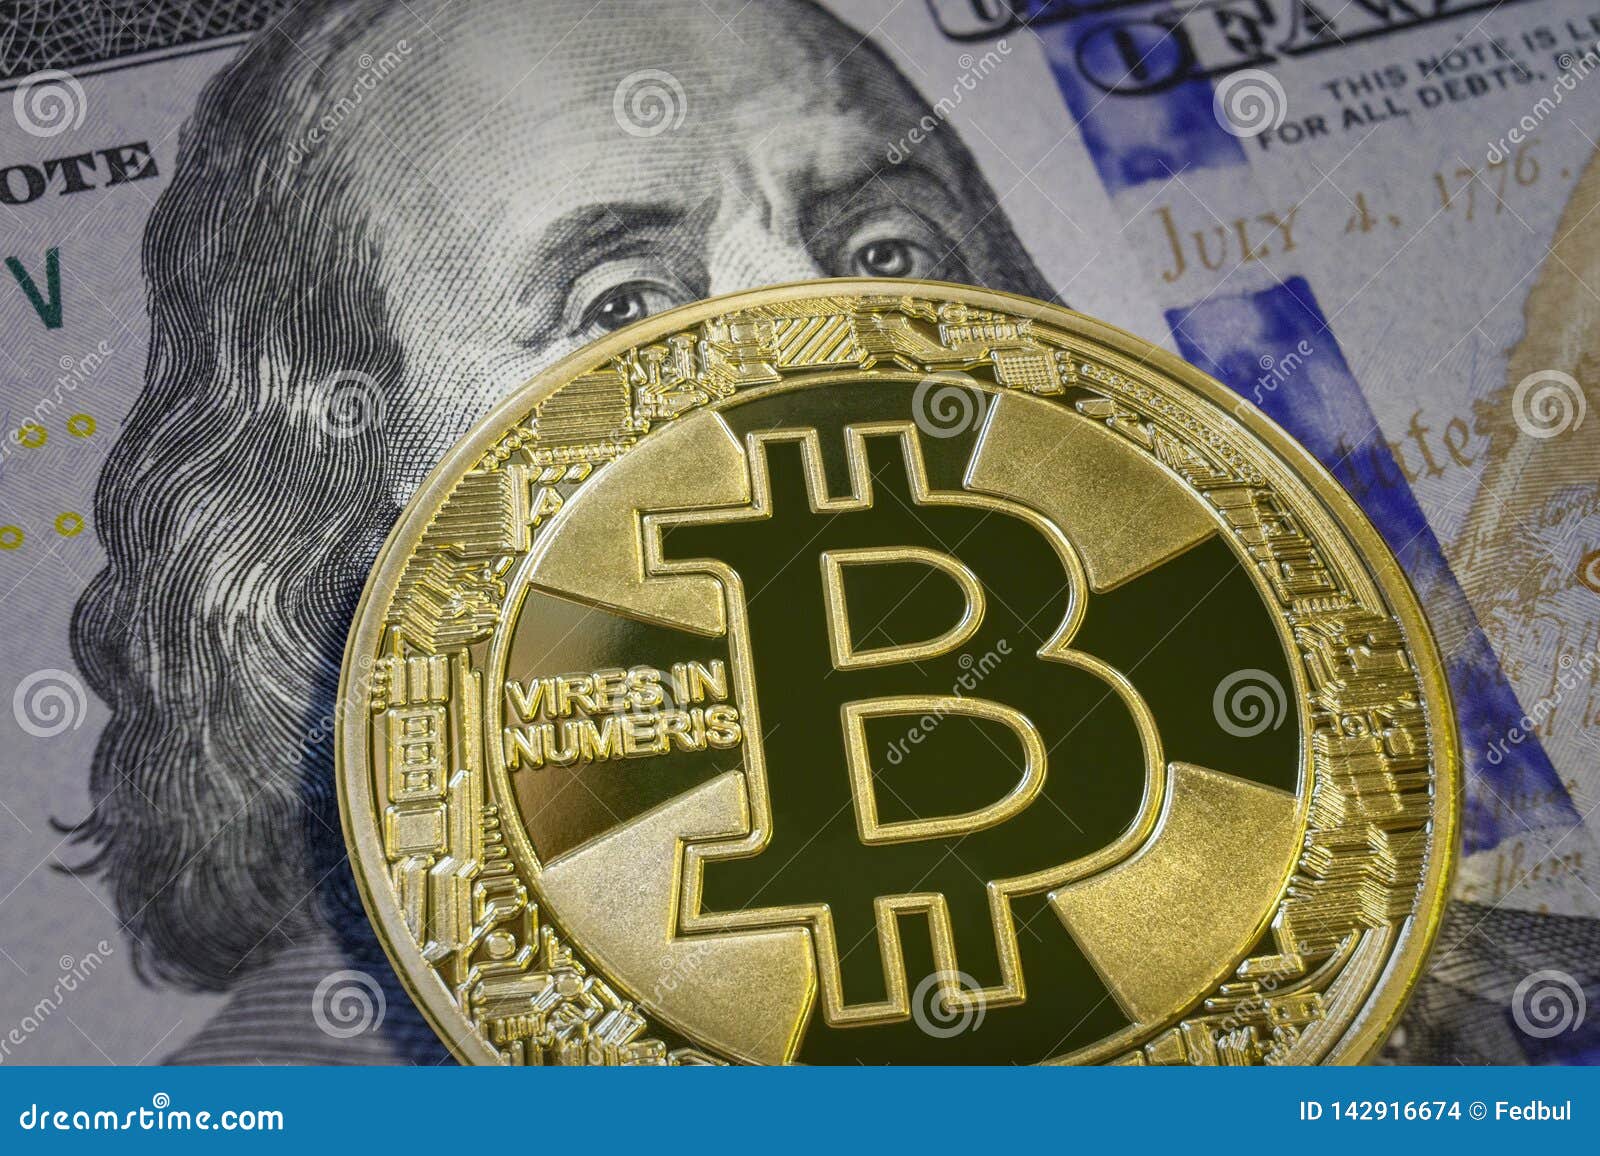 100 bucks in bitcoin